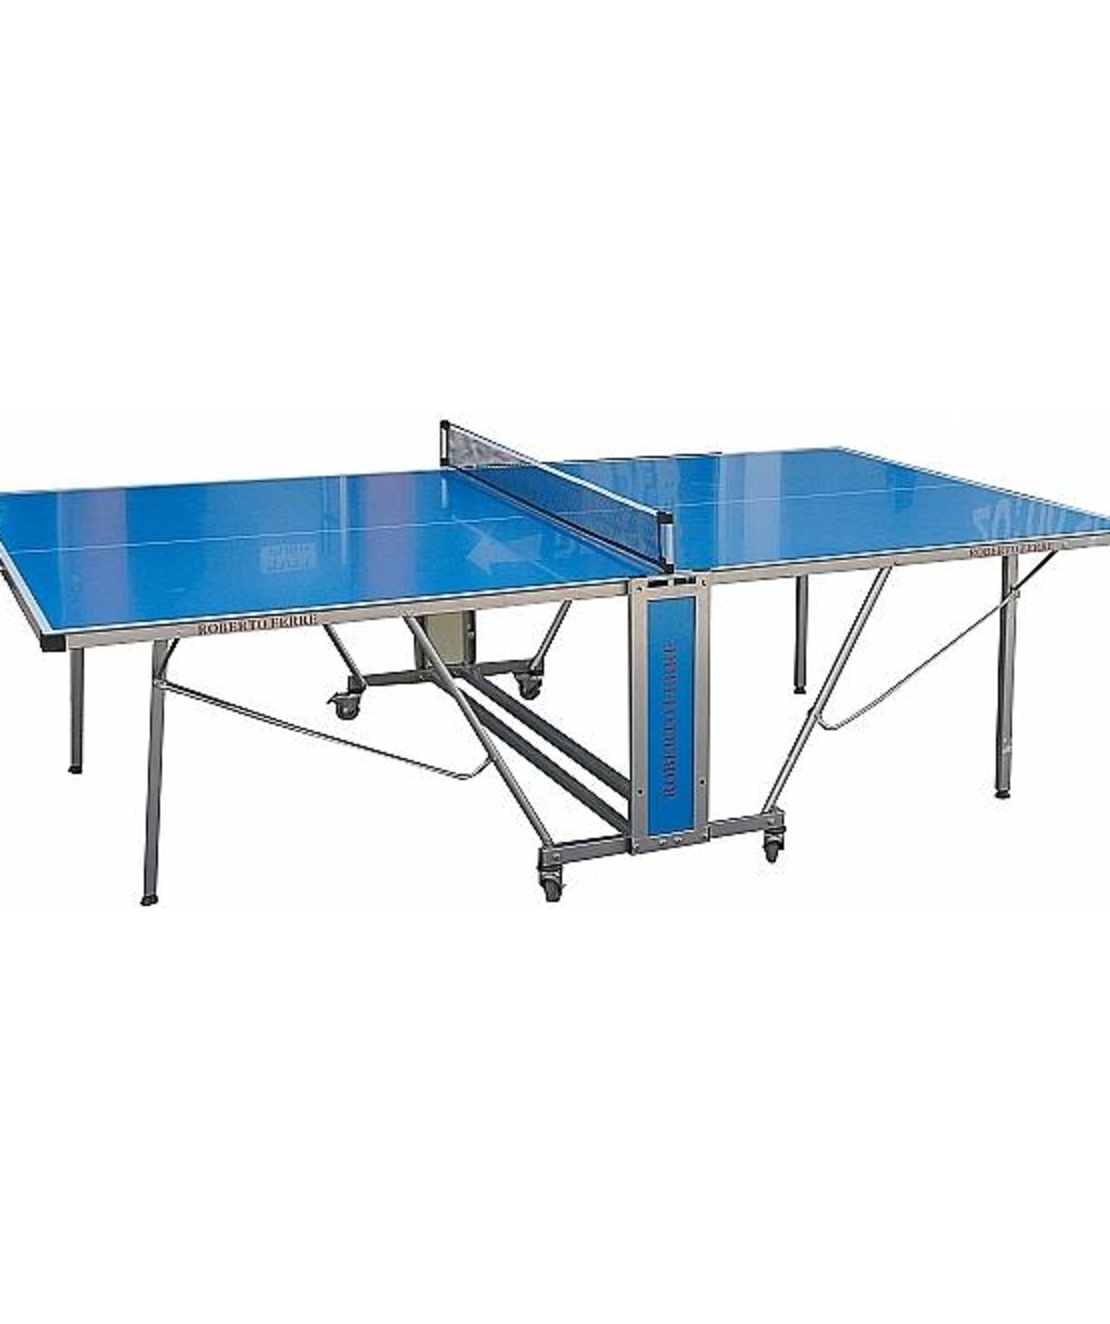 שולחן טניס חוץ Roberto Ferre עם פלטות אלומיניום דגם Outdoor 1000